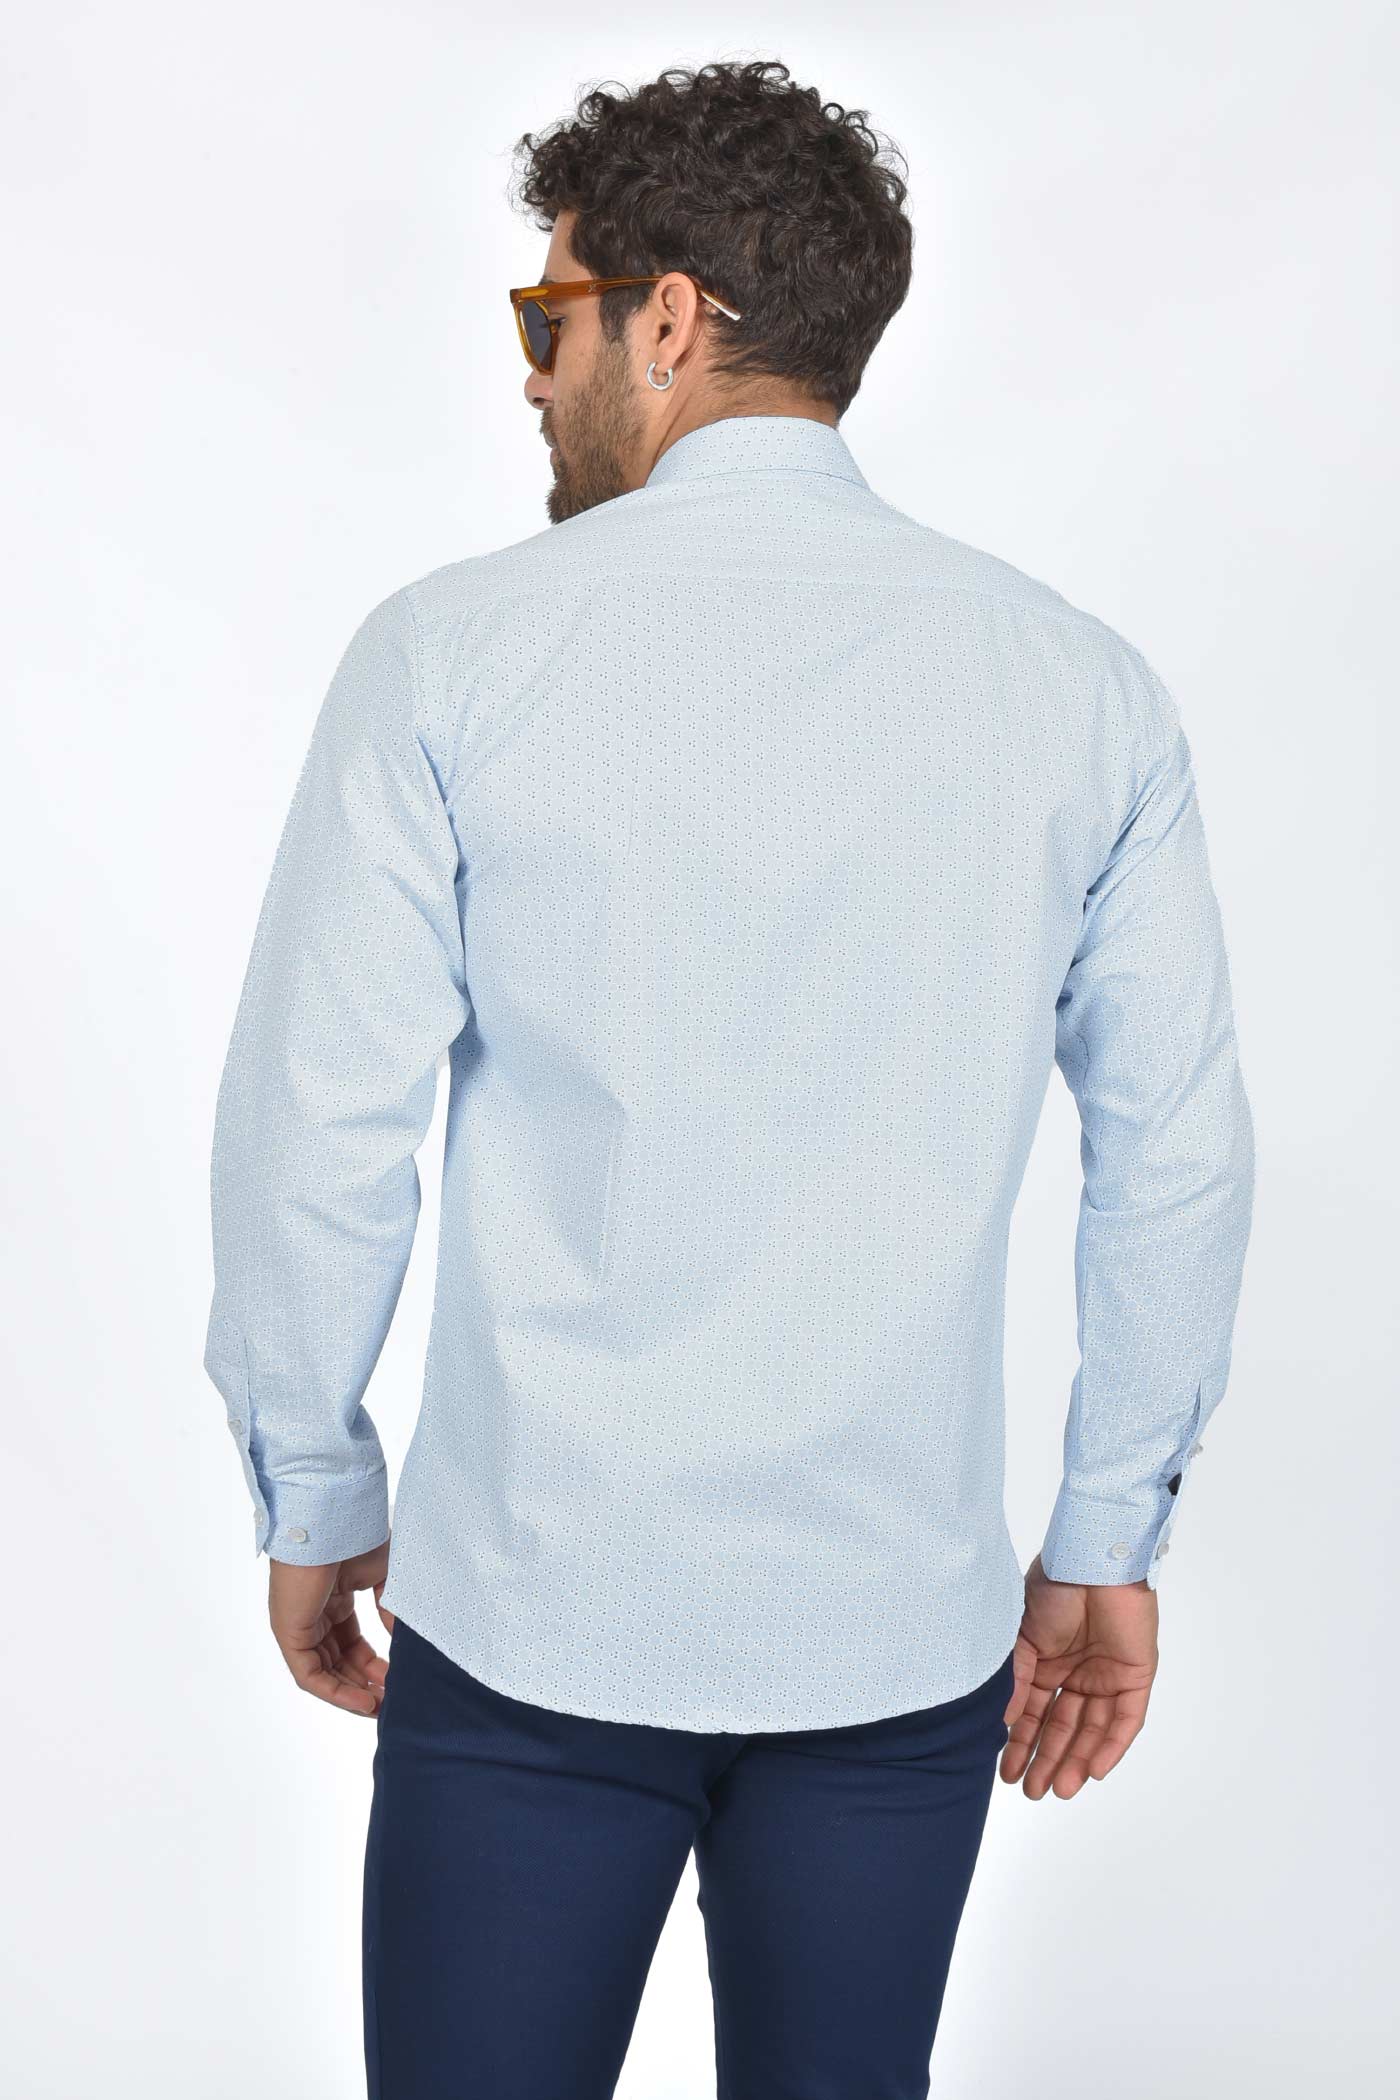 ανδρικό-καλοκαιρινό-πουκάμισο-με-διακριτικό-εμπριμέ-μοτίβο